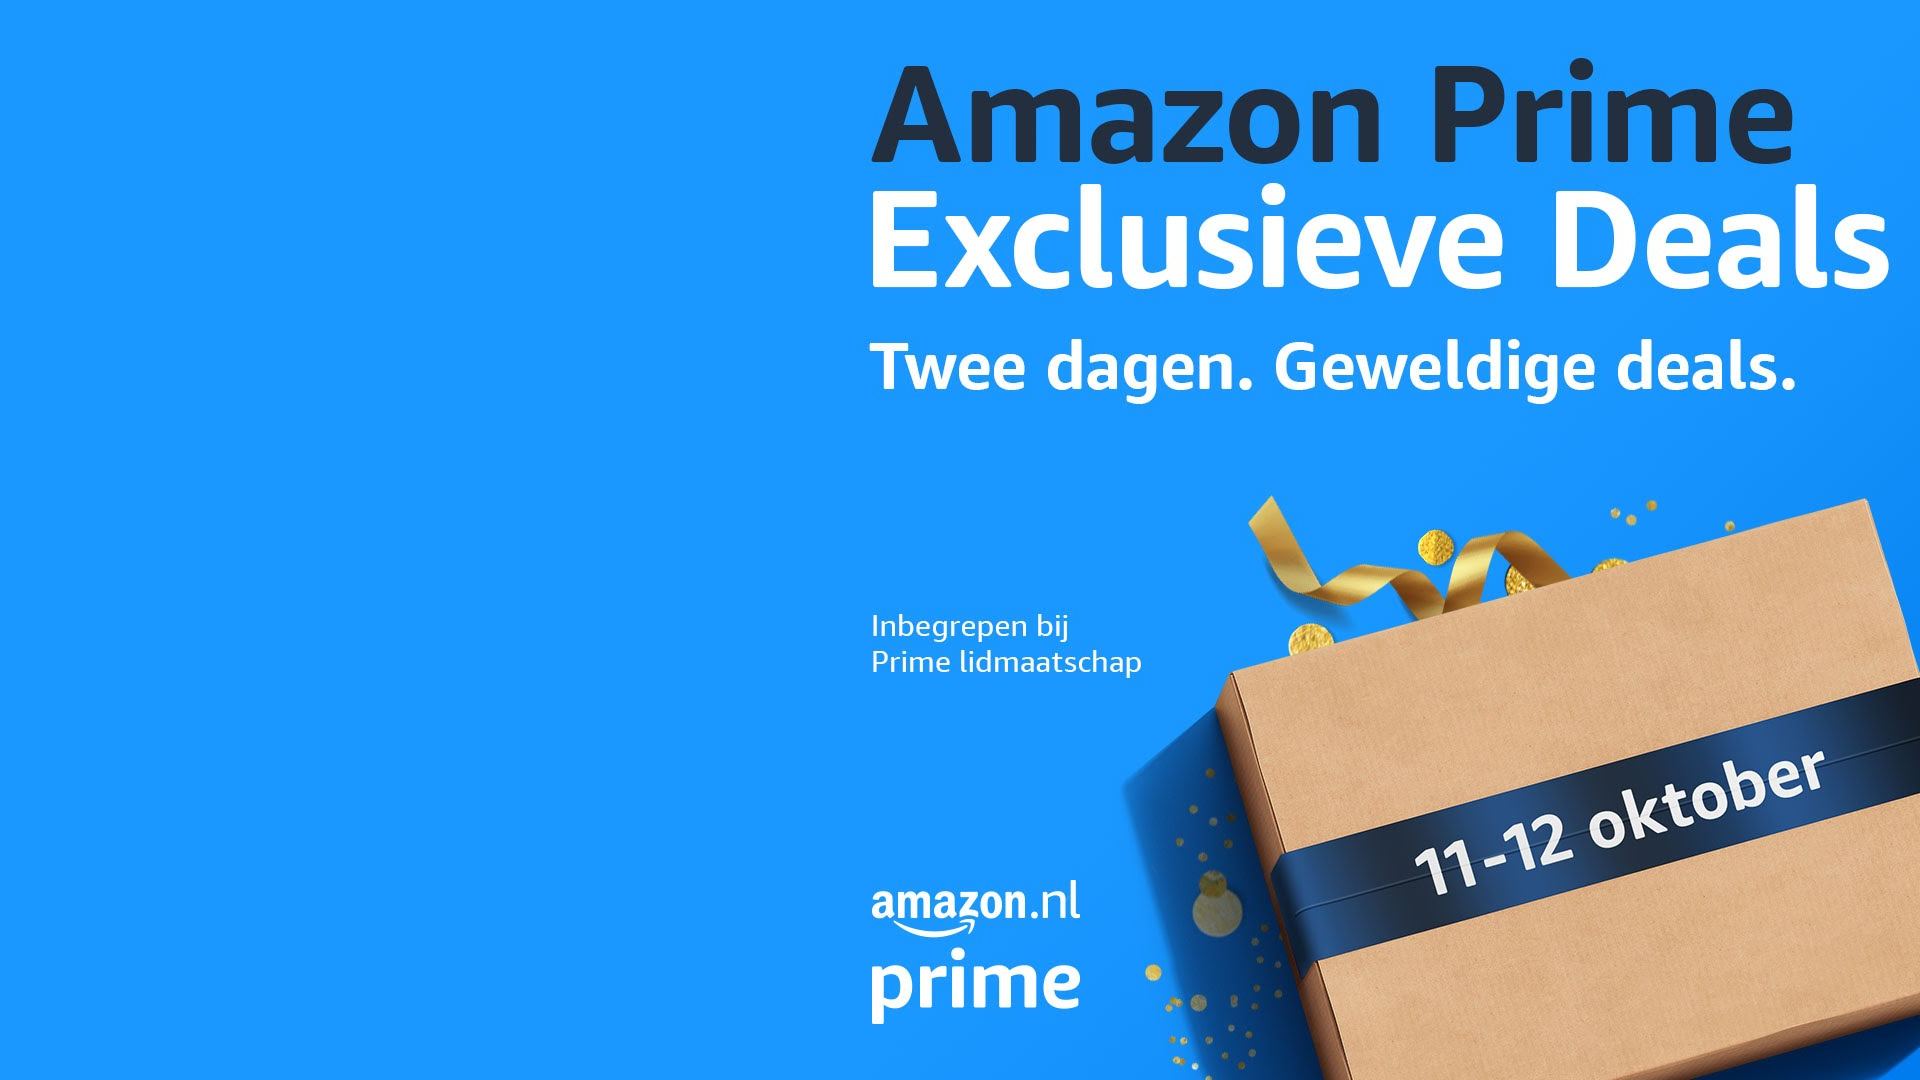 Amazon Prime Exclusieve Deals: dit moet je weten